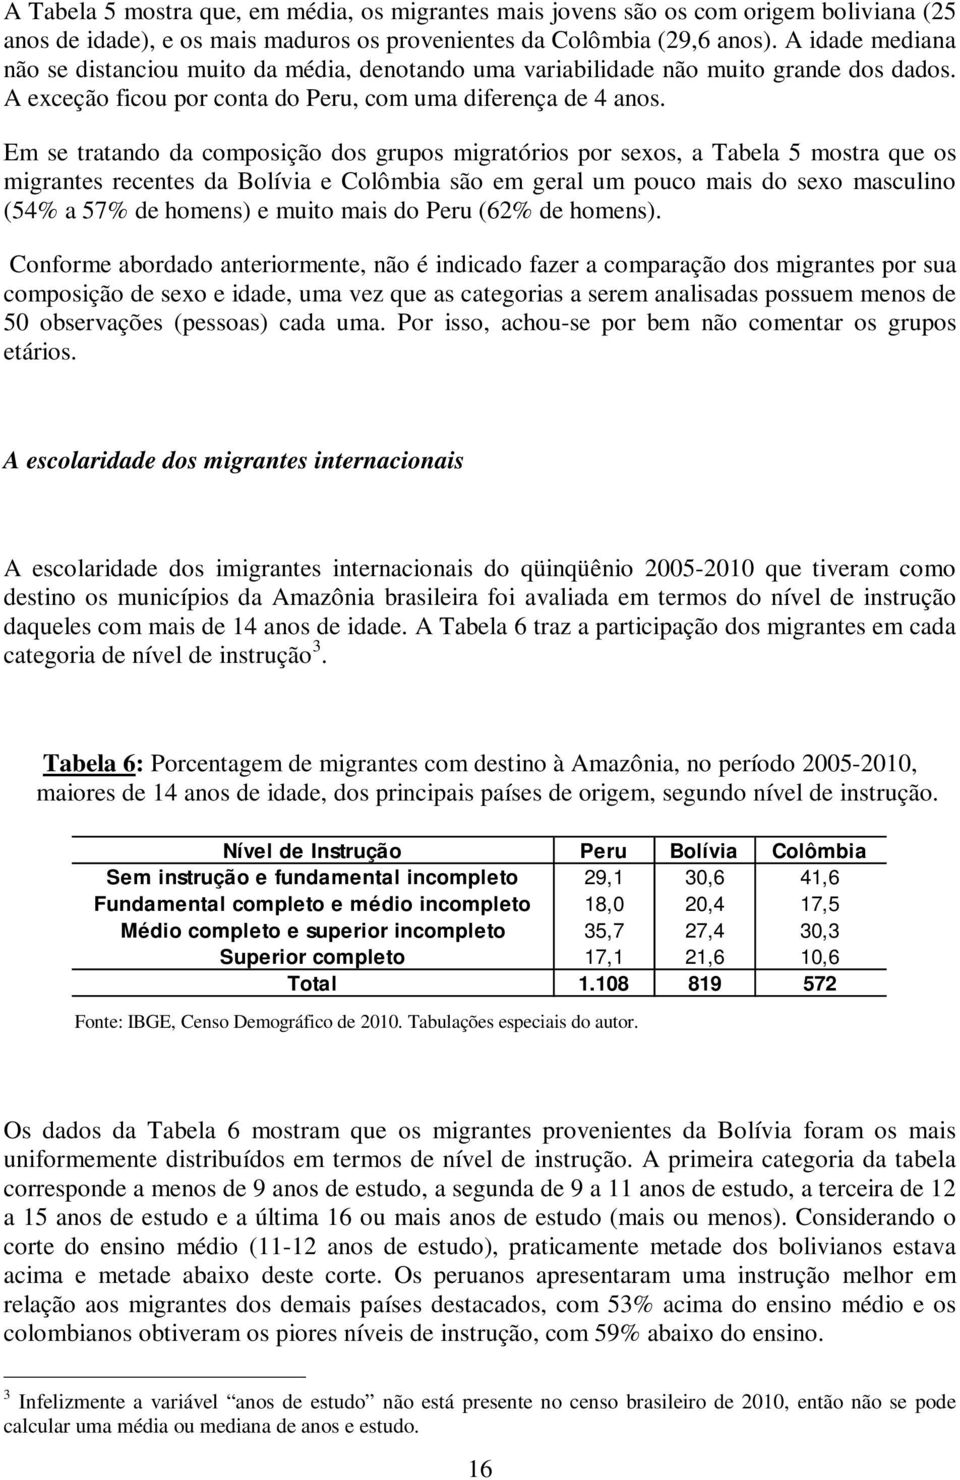 Em se tratando da composição dos grupos migratórios por sexos, a Tabela 5 mostra que os migrantes recentes da Bolívia e Colômbia são em geral um pouco mais do sexo masculino (54% a 57% de homens) e